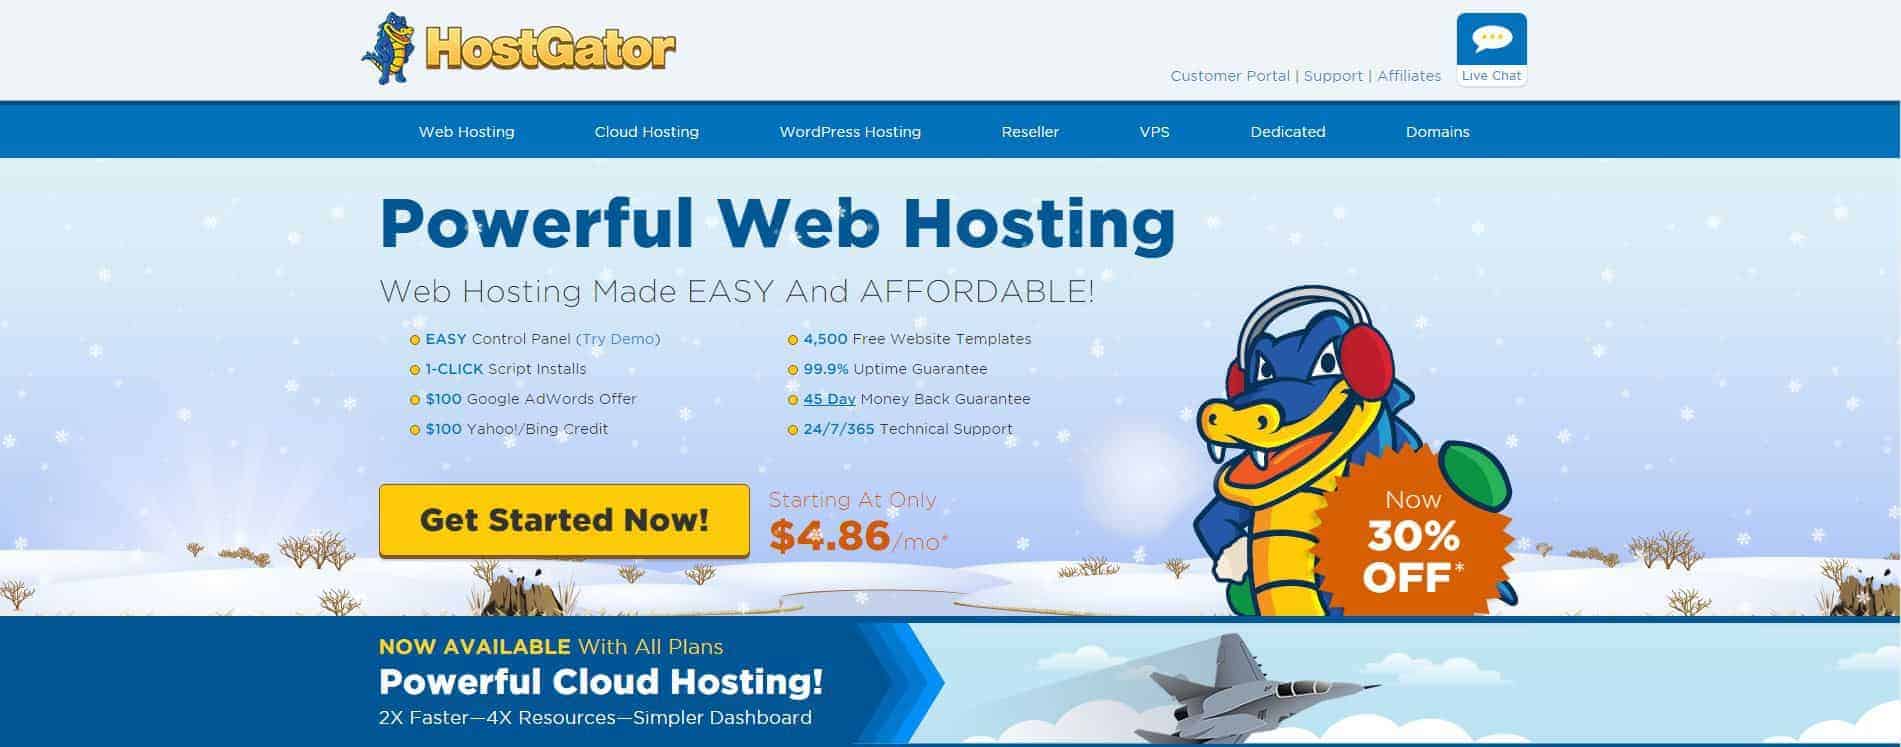 Screenshot of HostGator website for HostGator coupon code post